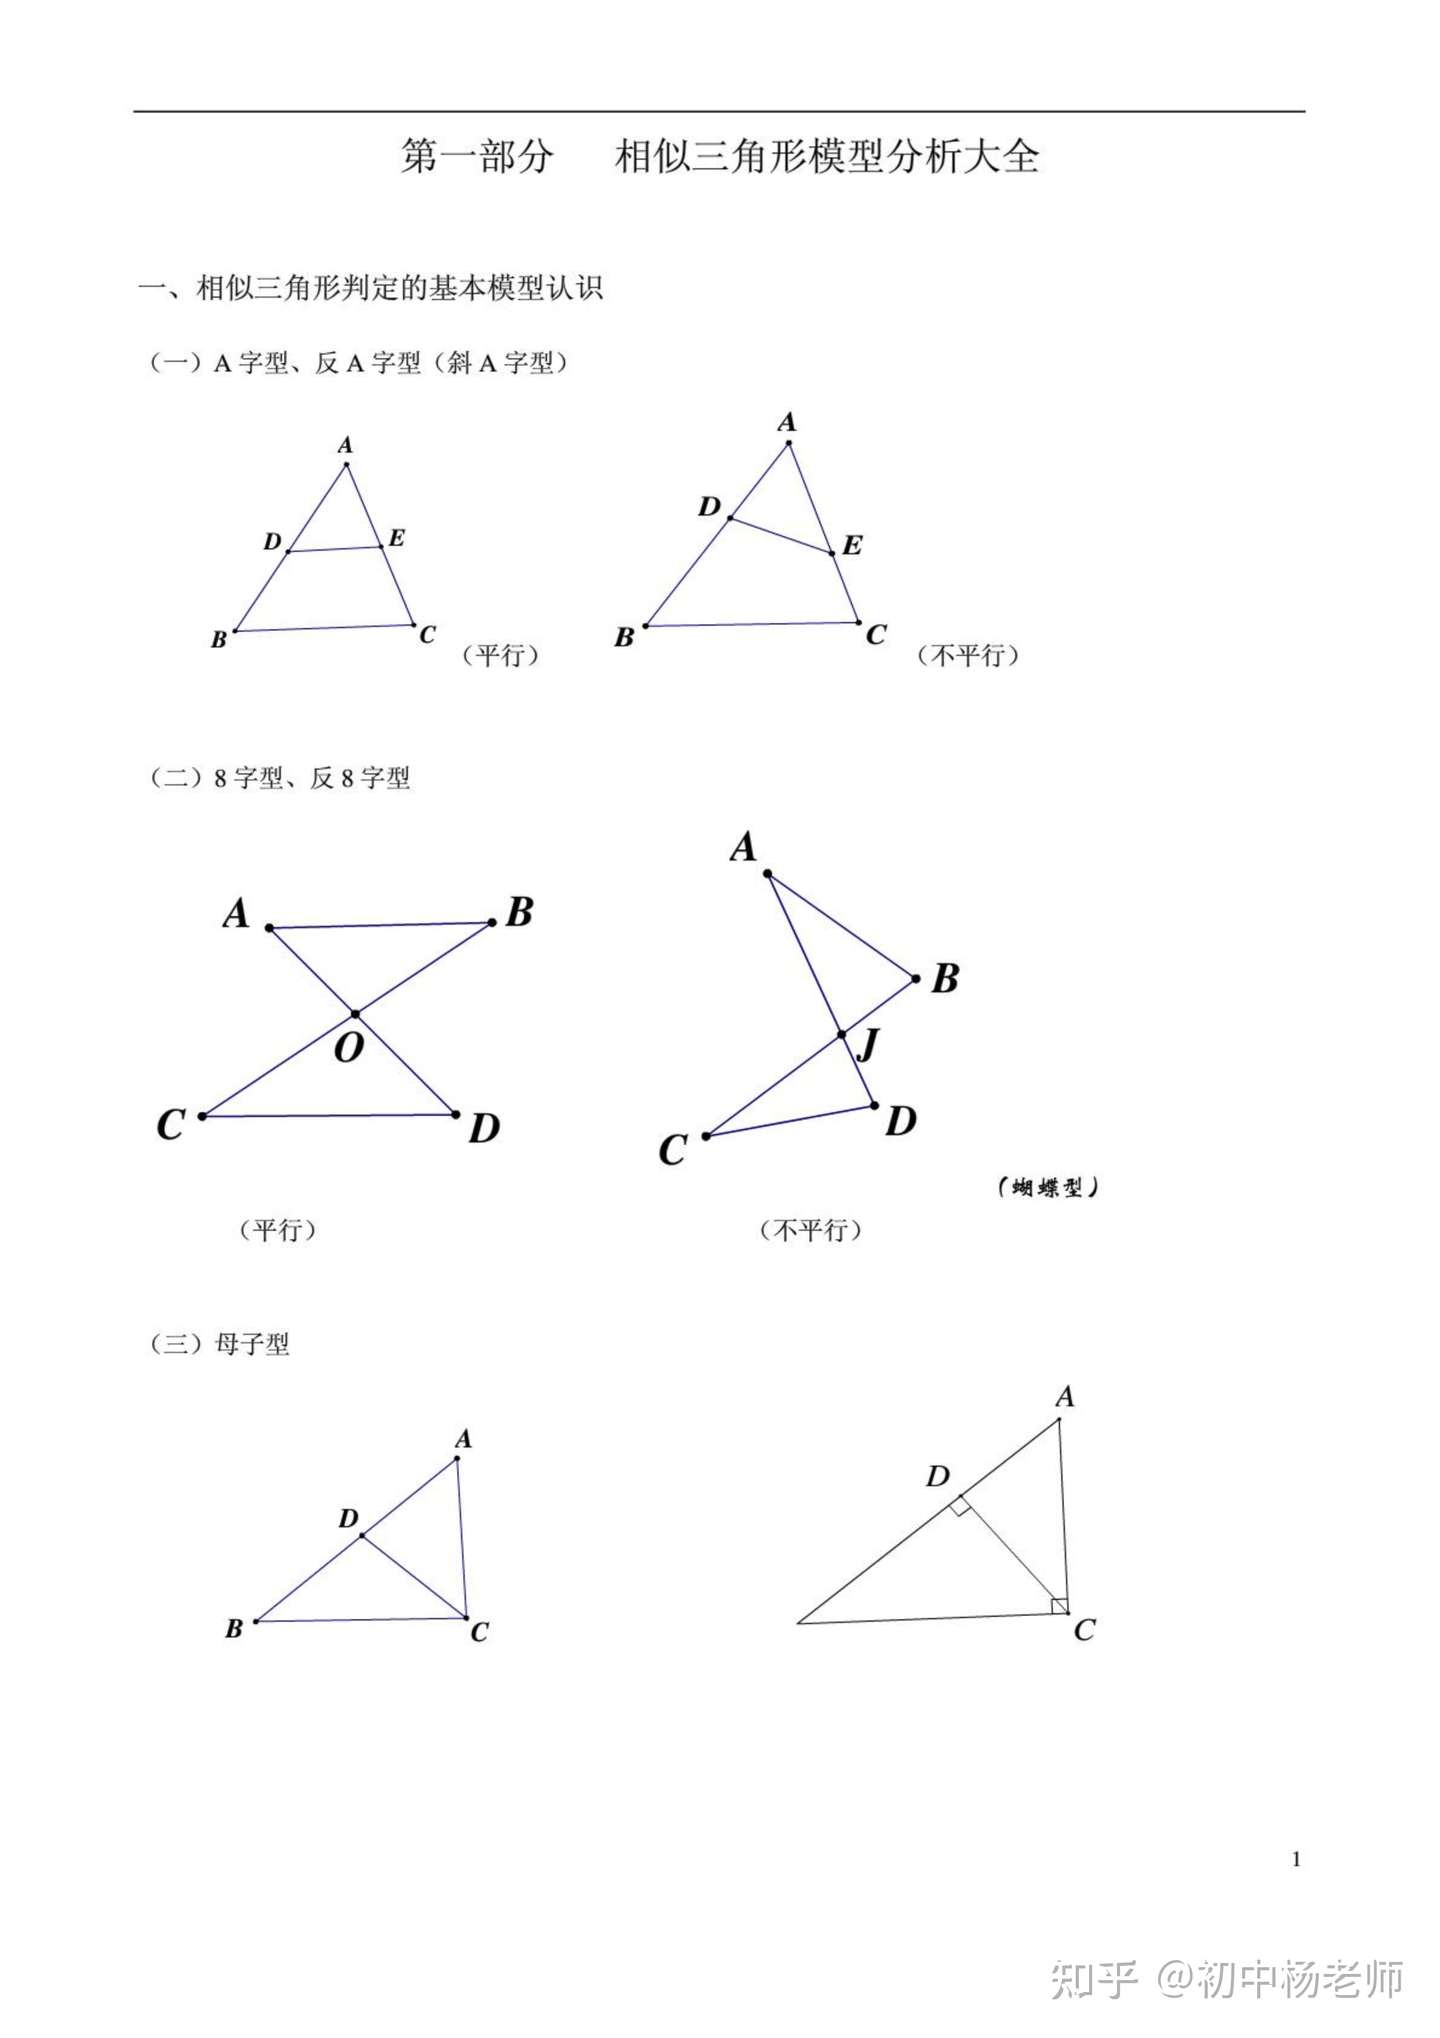 初中数学 相似三角形常见经典模型总结 知乎